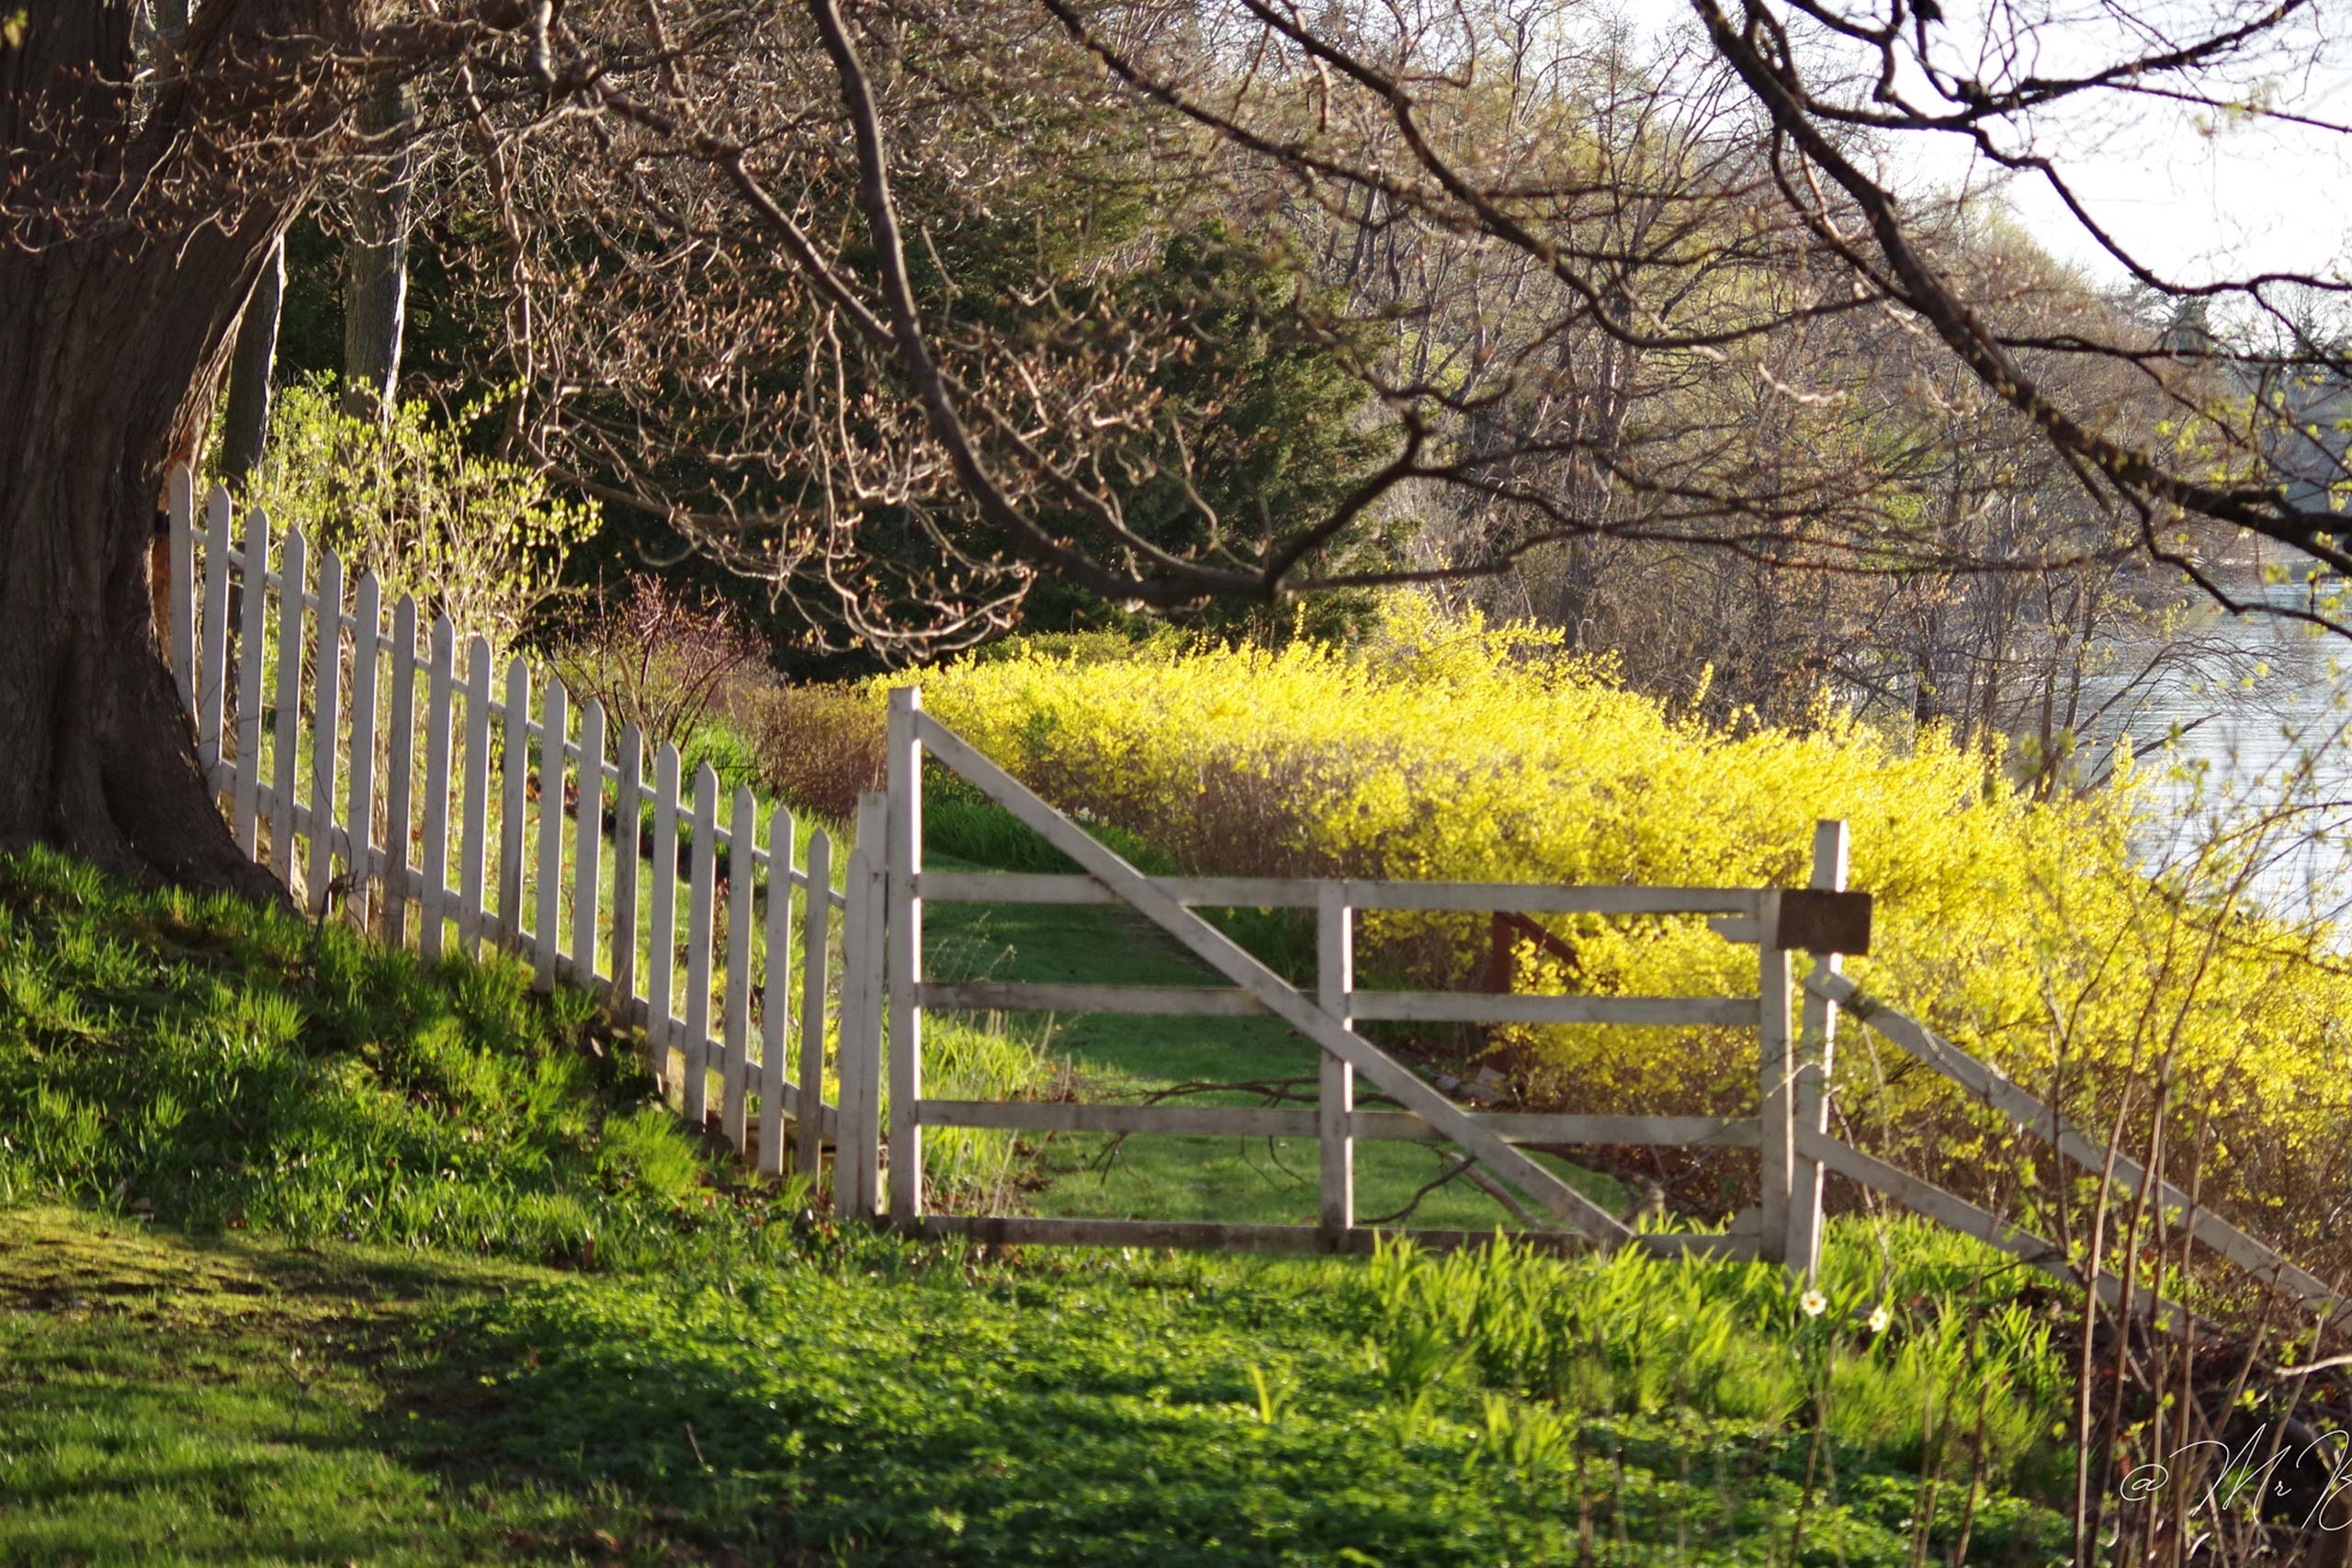 a gate in a field